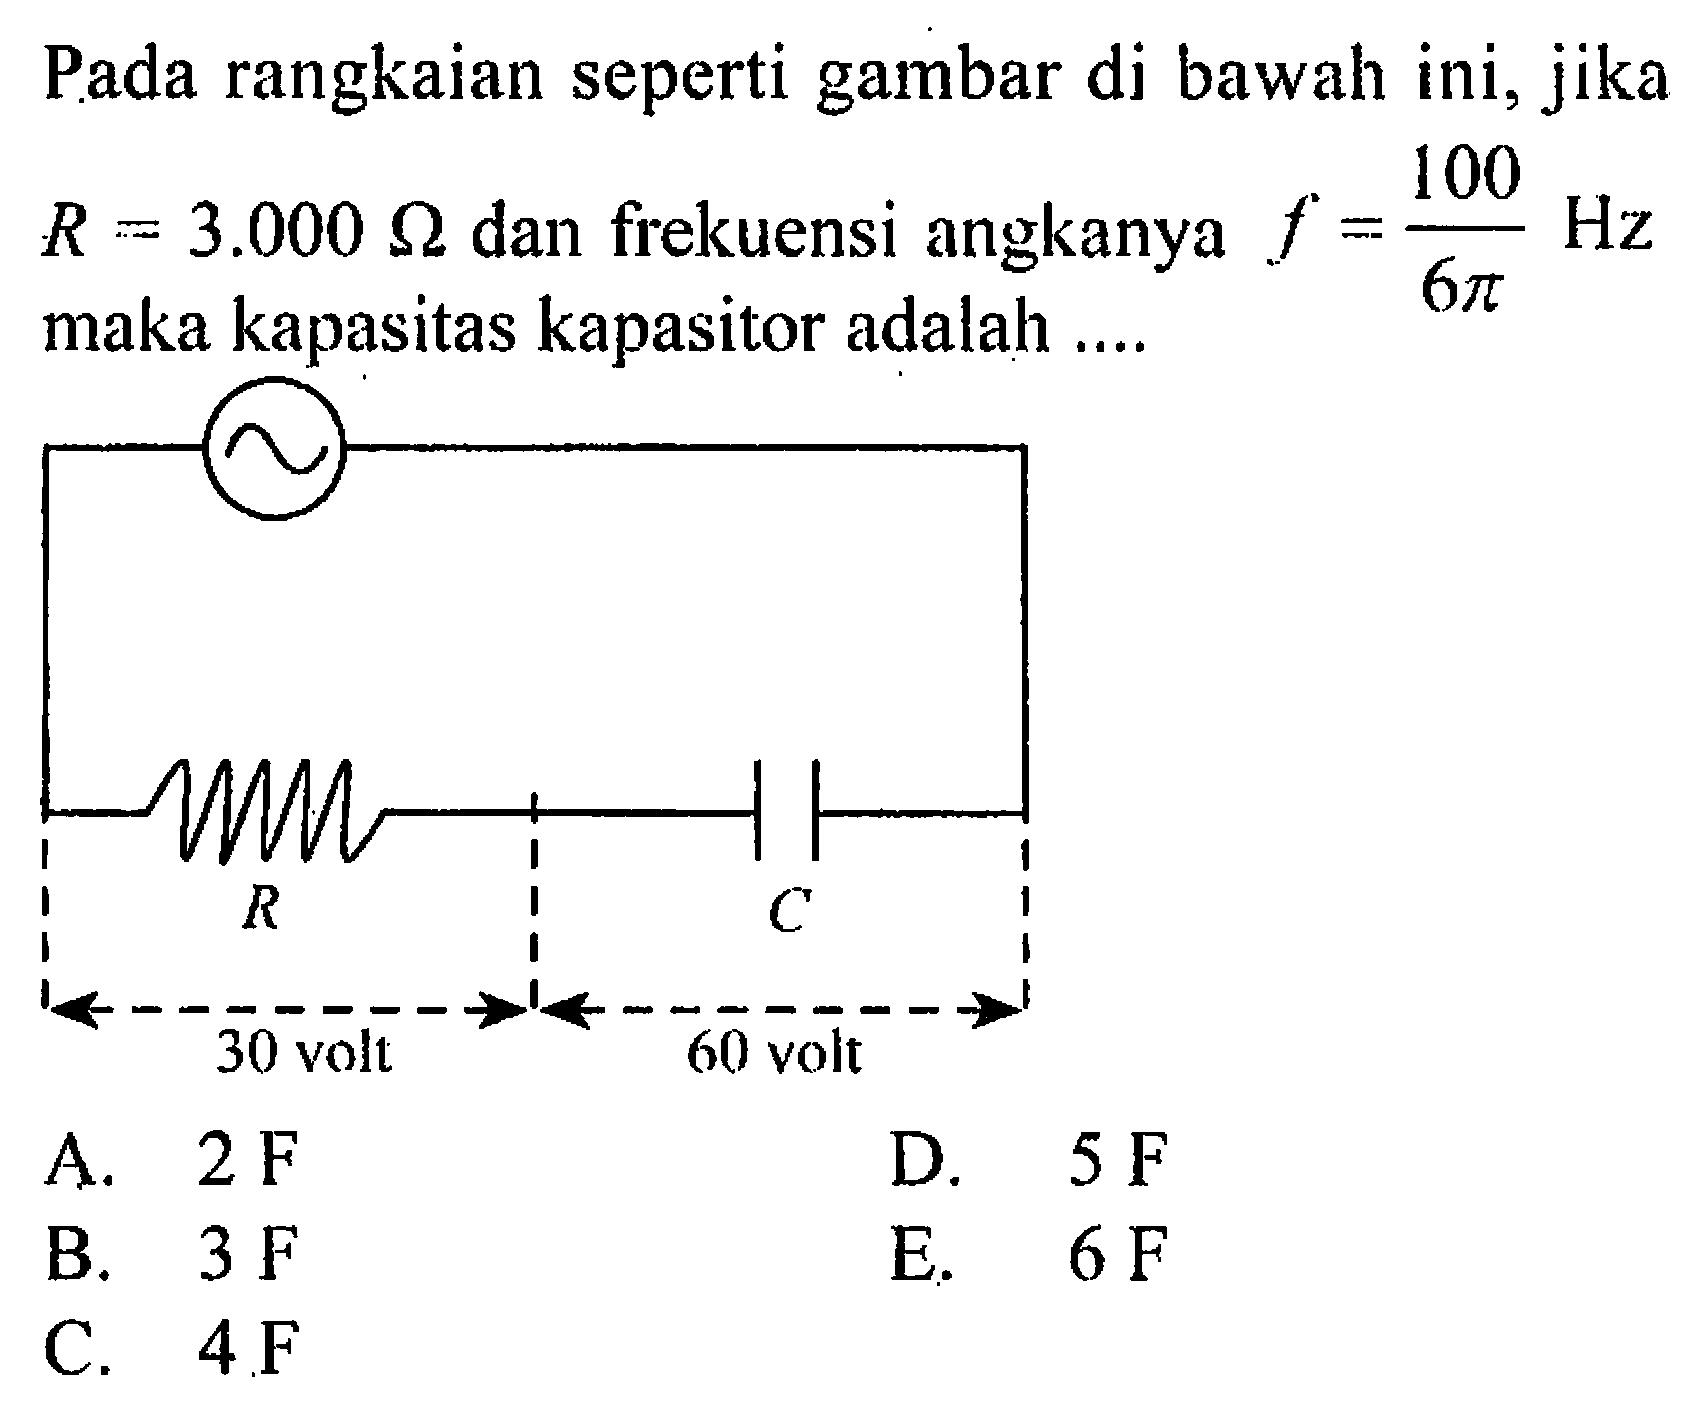 Pada rangkaian seperti gambar di bawah ini, jika R = 300 ohm dan fiekuensi angkanya f = 100 Hz /6phi maka kapasitas kapasitor adalah